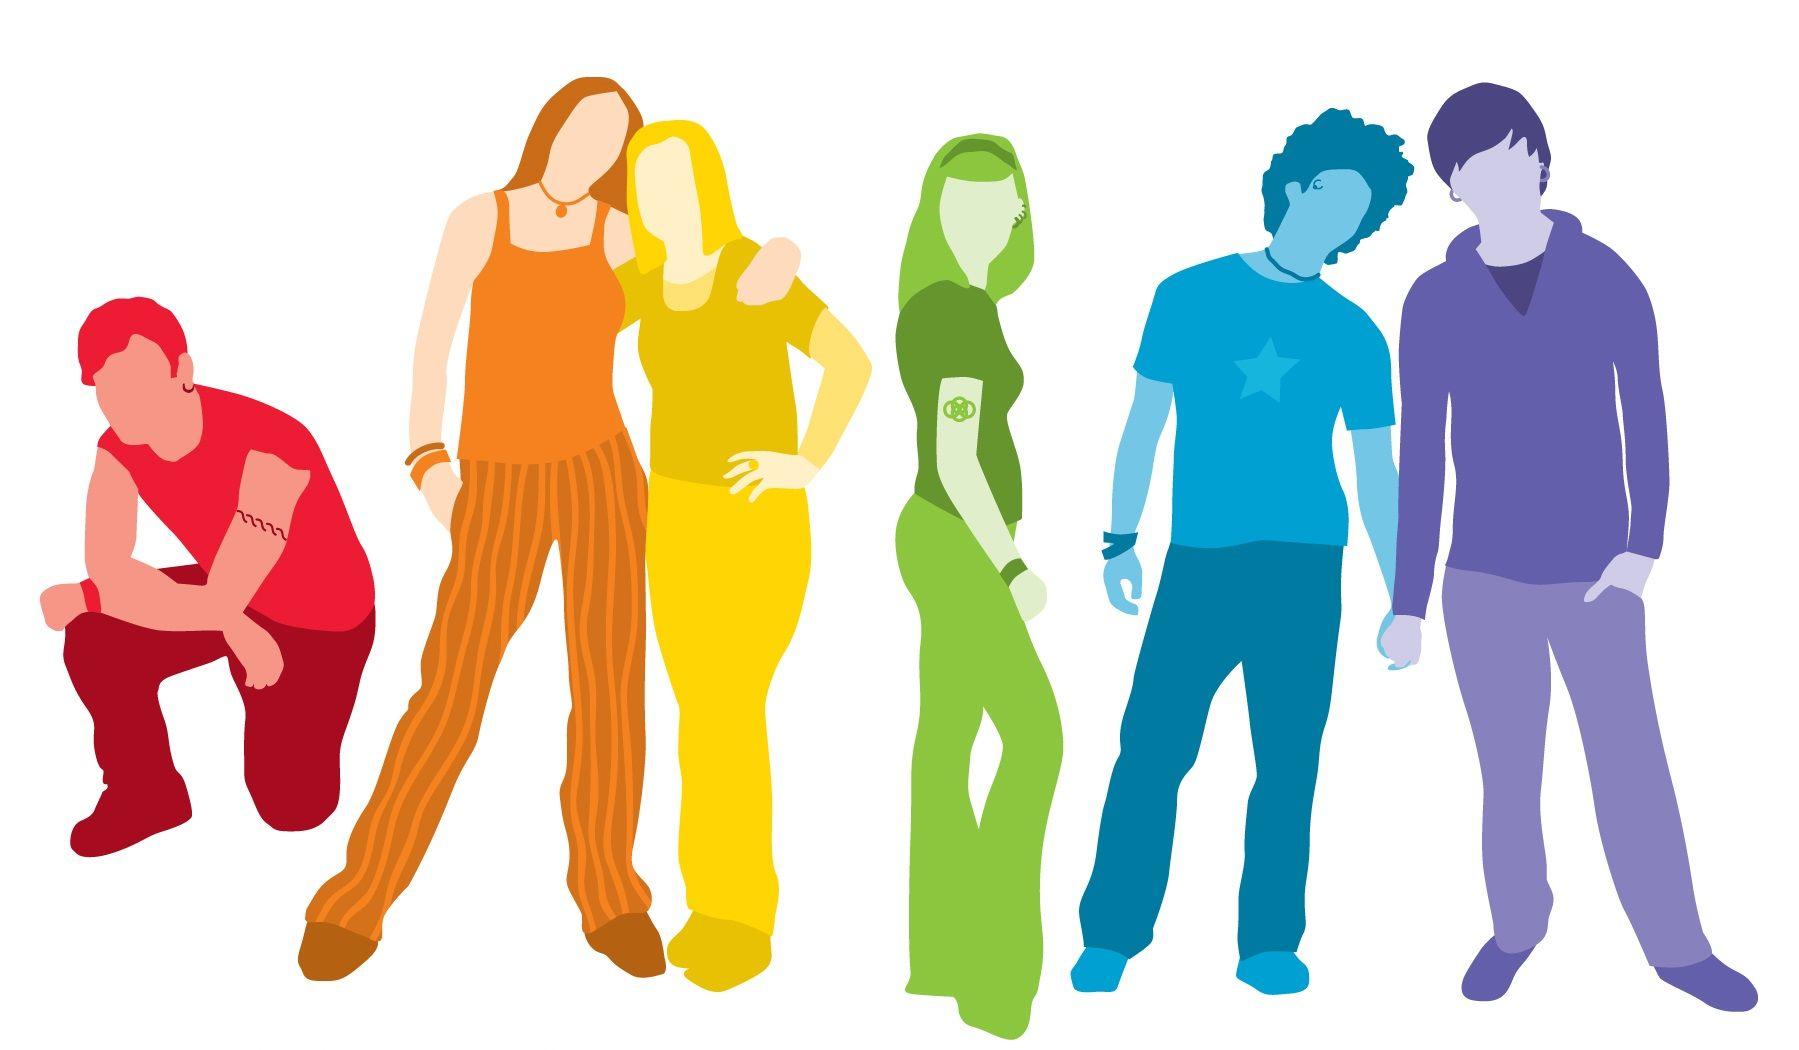 Rainbow Person Logo - Rainbow Youth logo no text